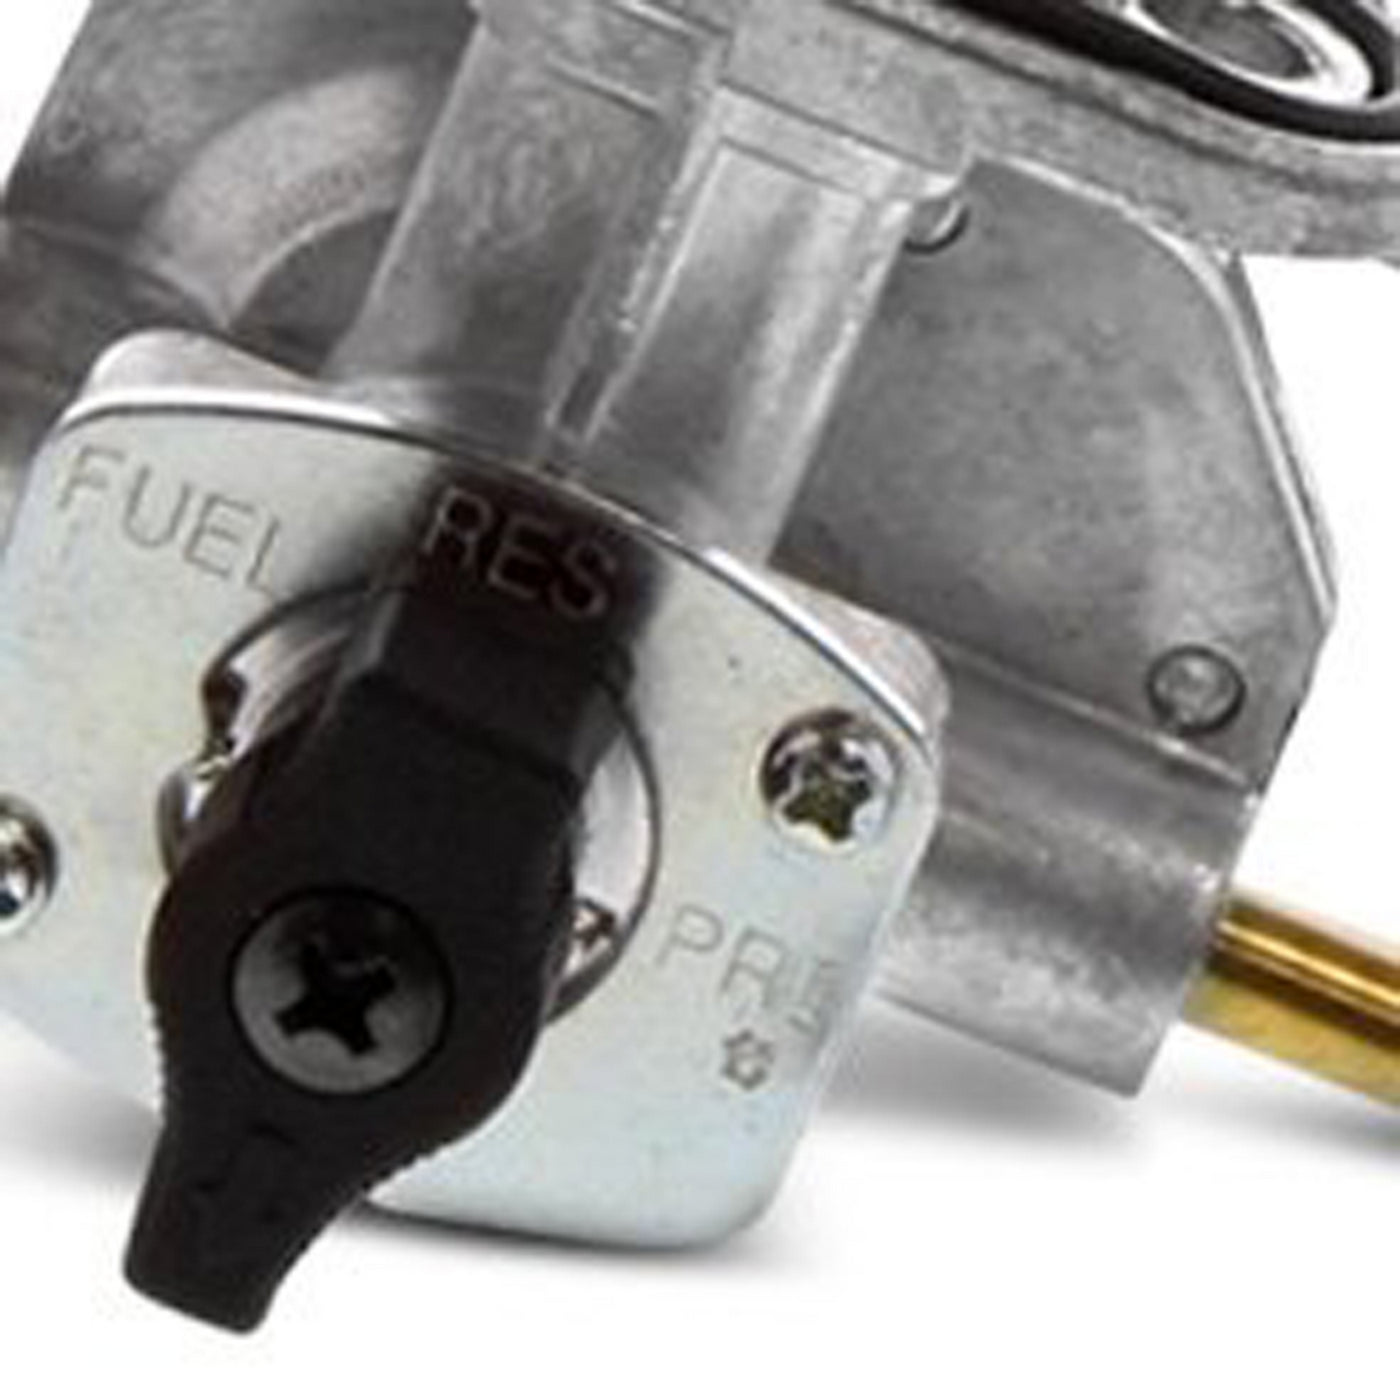 Fuel Star FS101-0127 Fuel Valve Kit #FS101-0127